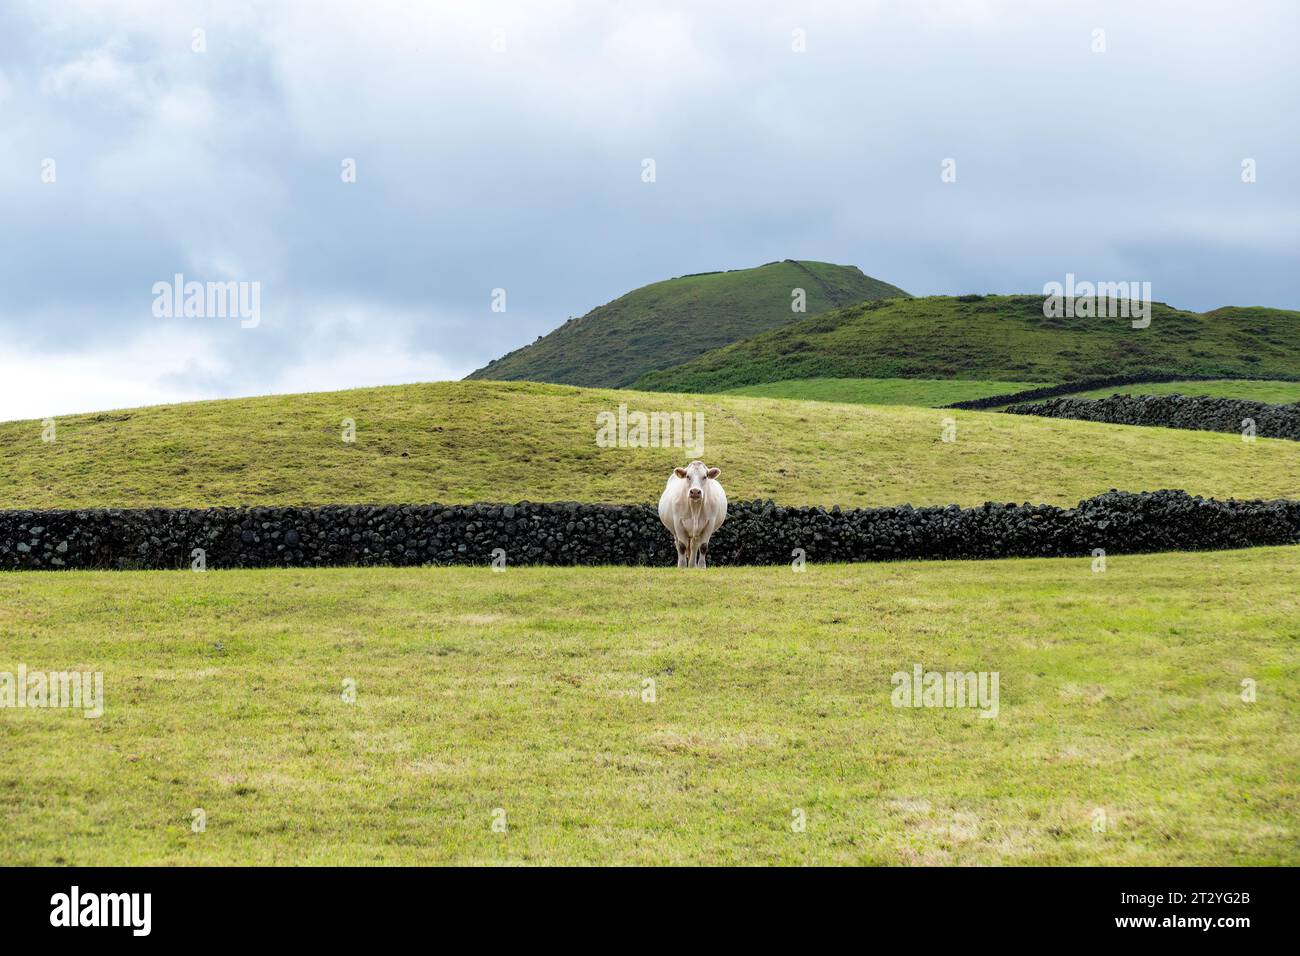 une vache à viande solitaire dans un pré azorien. Paysage rural des Açores Banque D'Images